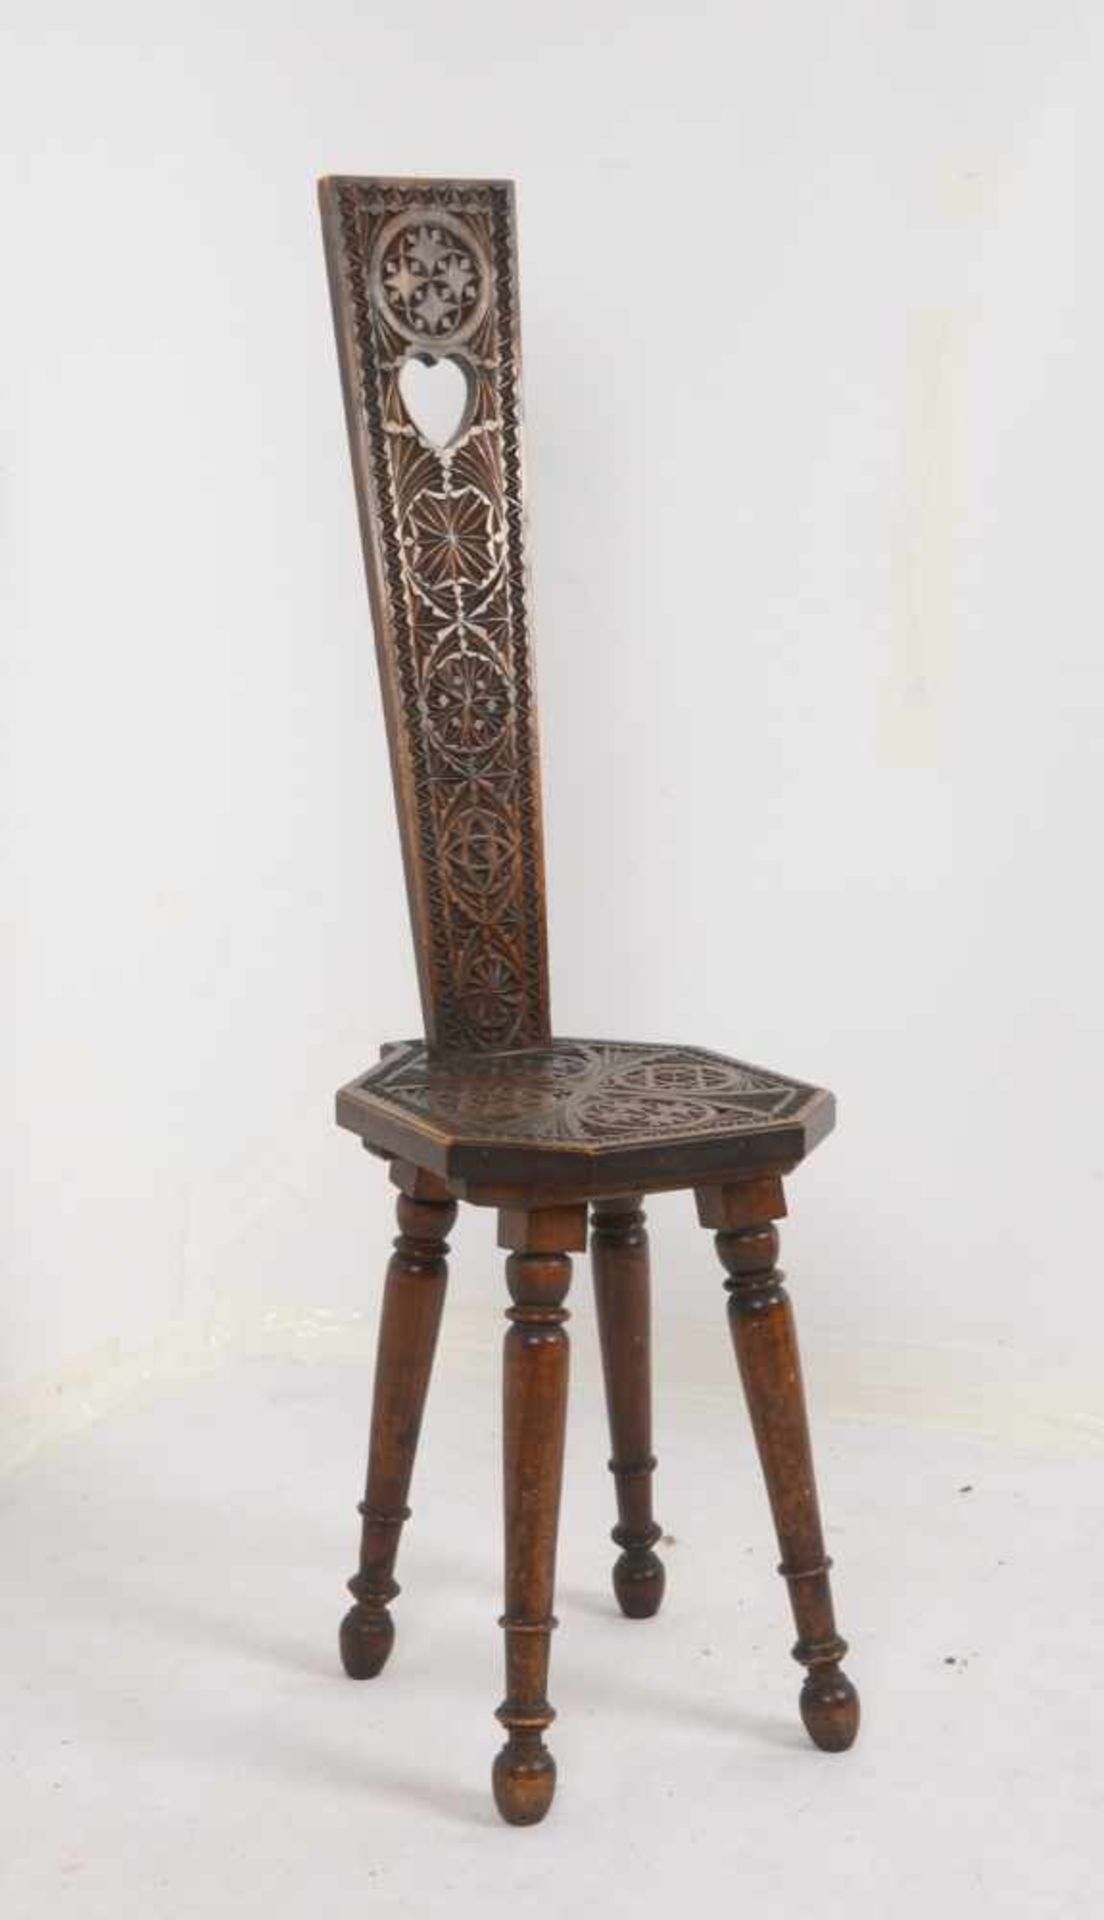 Stuhl, Holz mit Kerbschnitzerei, mit hoher schmaler Rückenlehne; Lehnenhöhe 107 cm